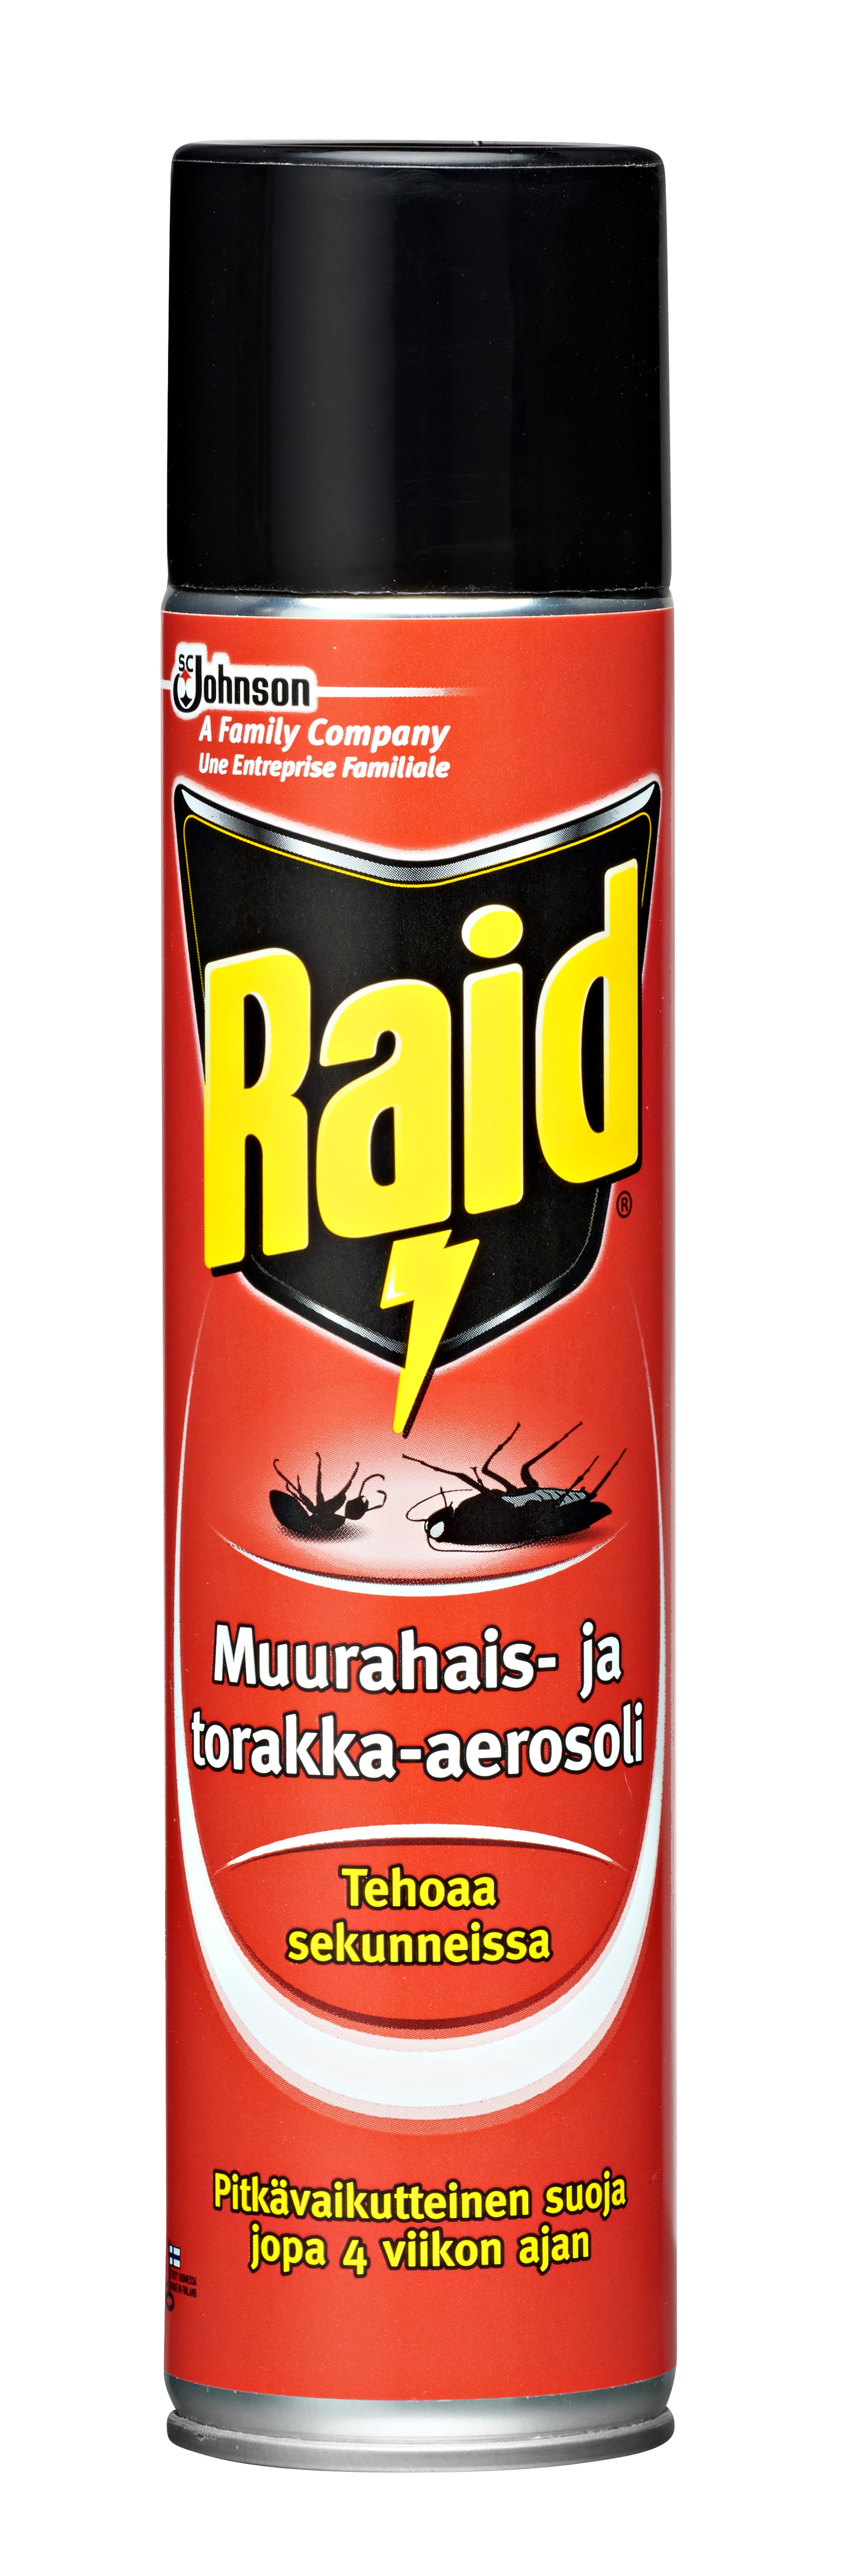 Muurahais-ja torakka-aerosoli Raid 300ml - K-Rauta